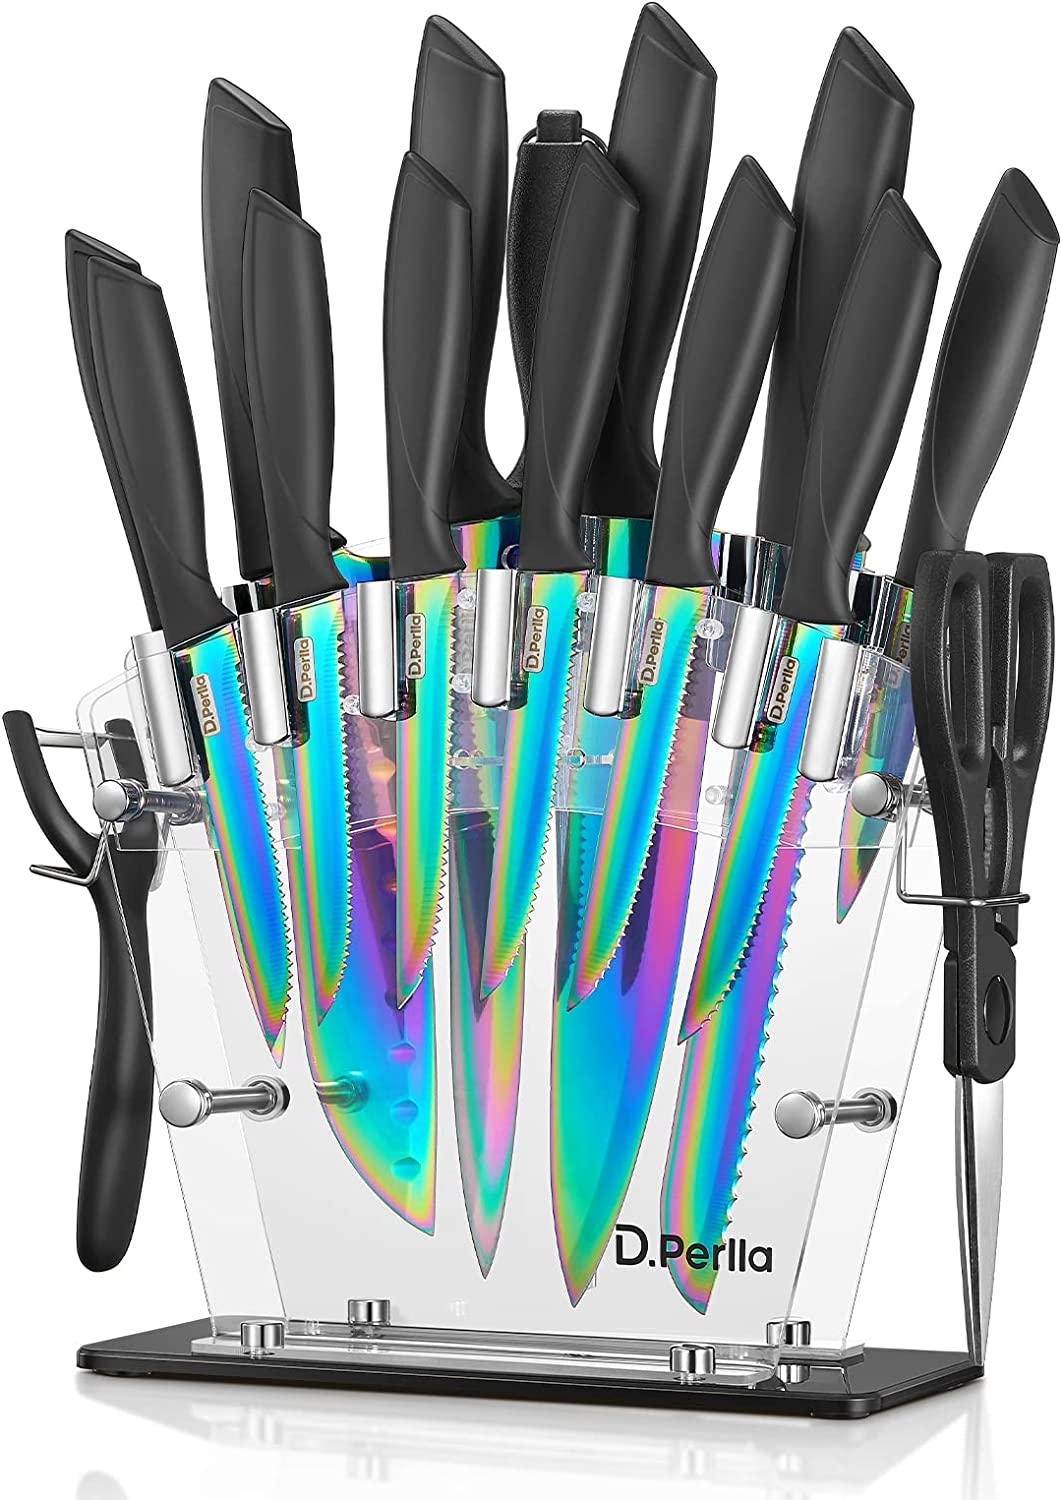 Titanium Cutlery Ultimate 16-Piece Knife Block Set